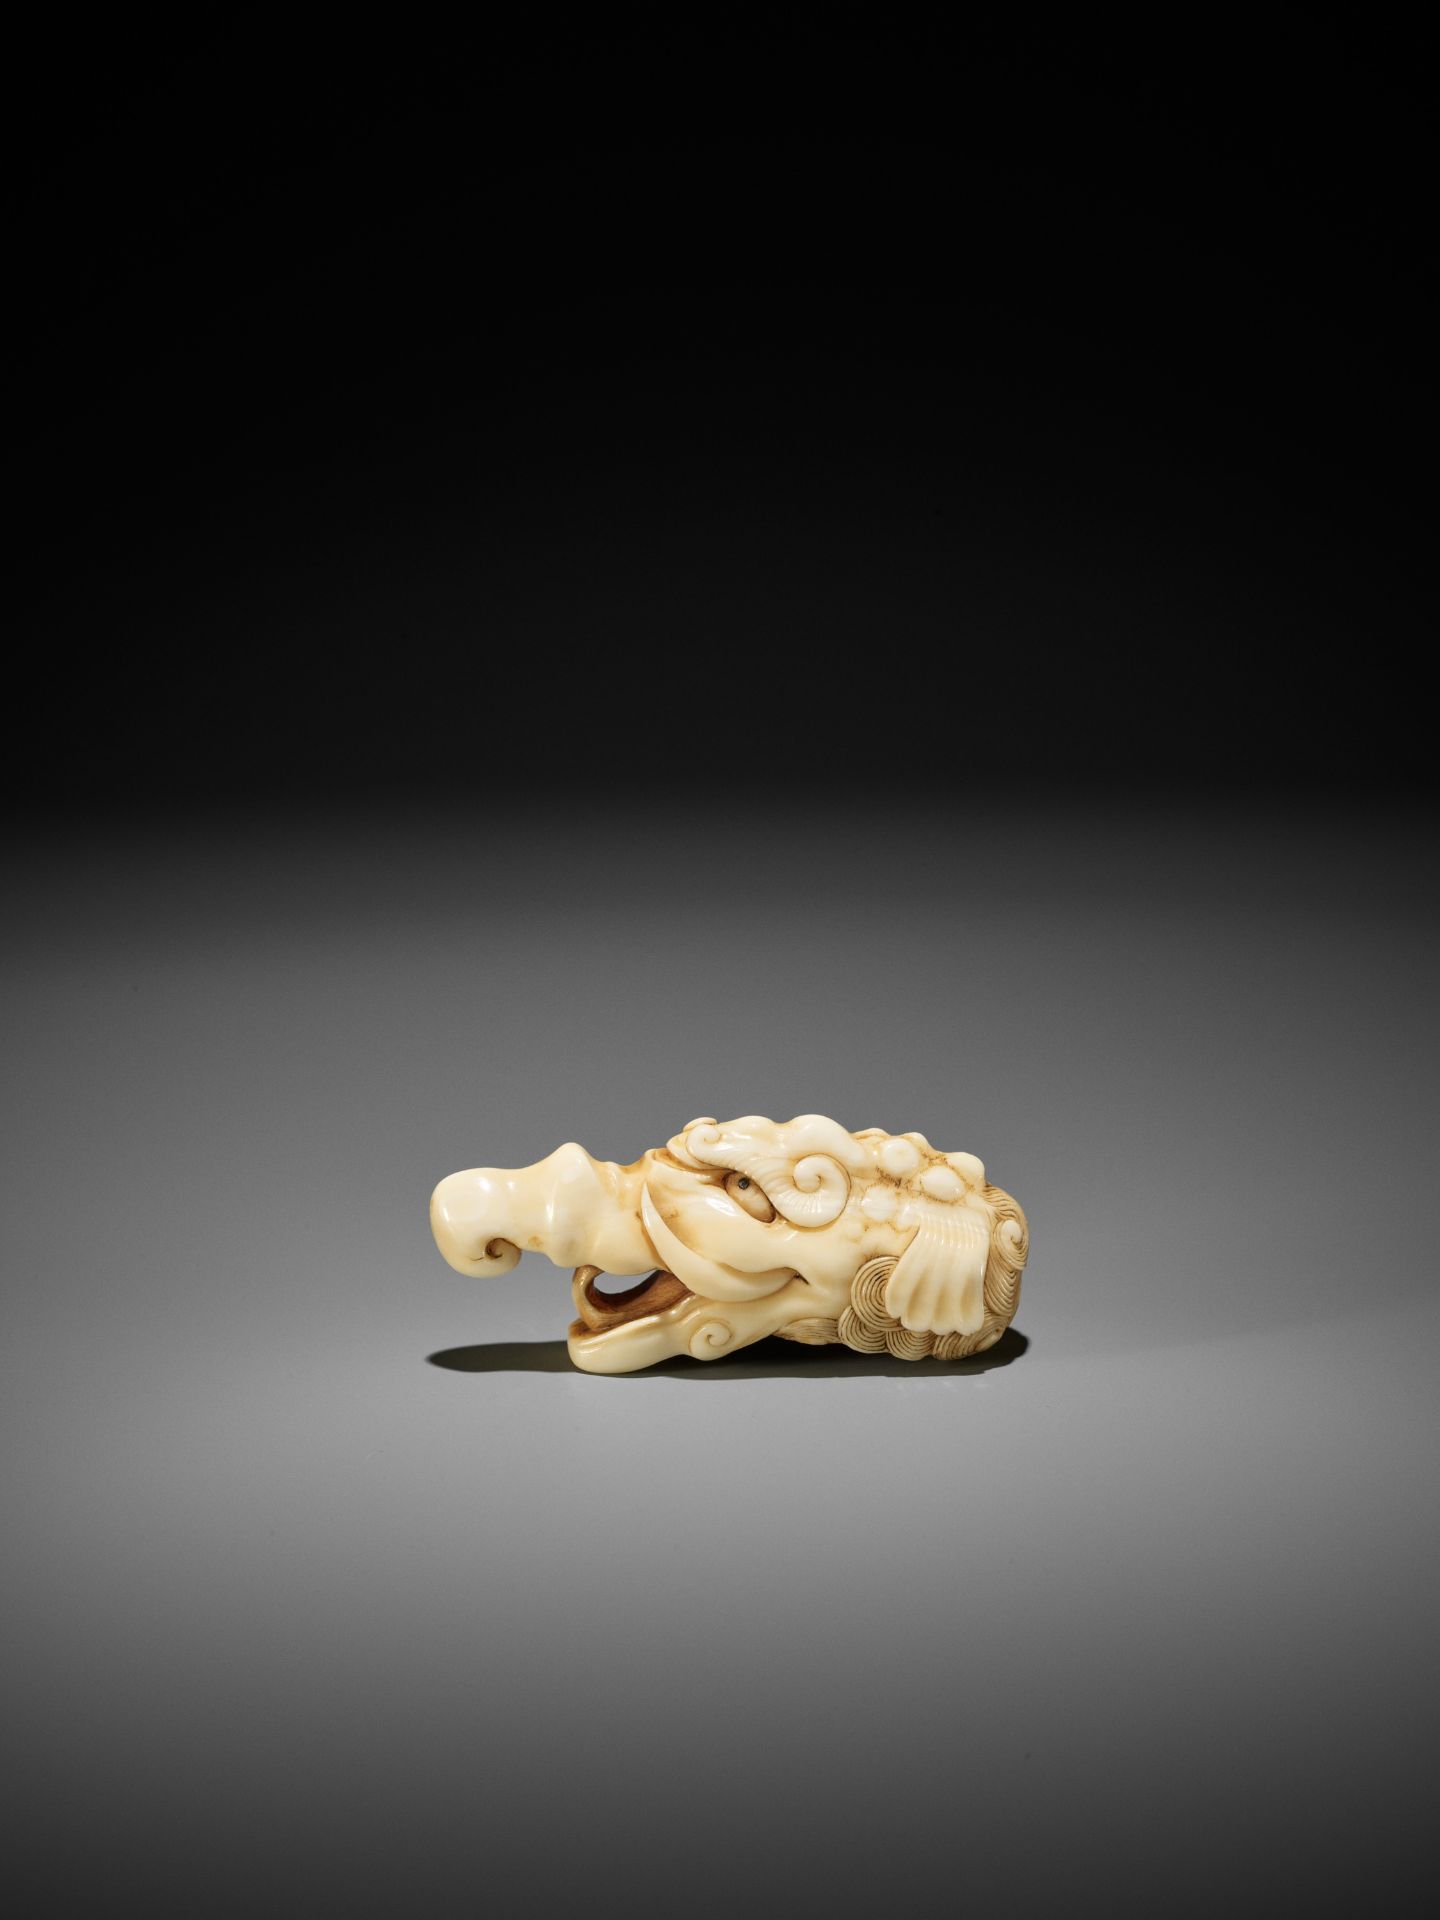 A RARE MARINE IVORY NETSUKE OF A BAKU HEAD - Image 6 of 8